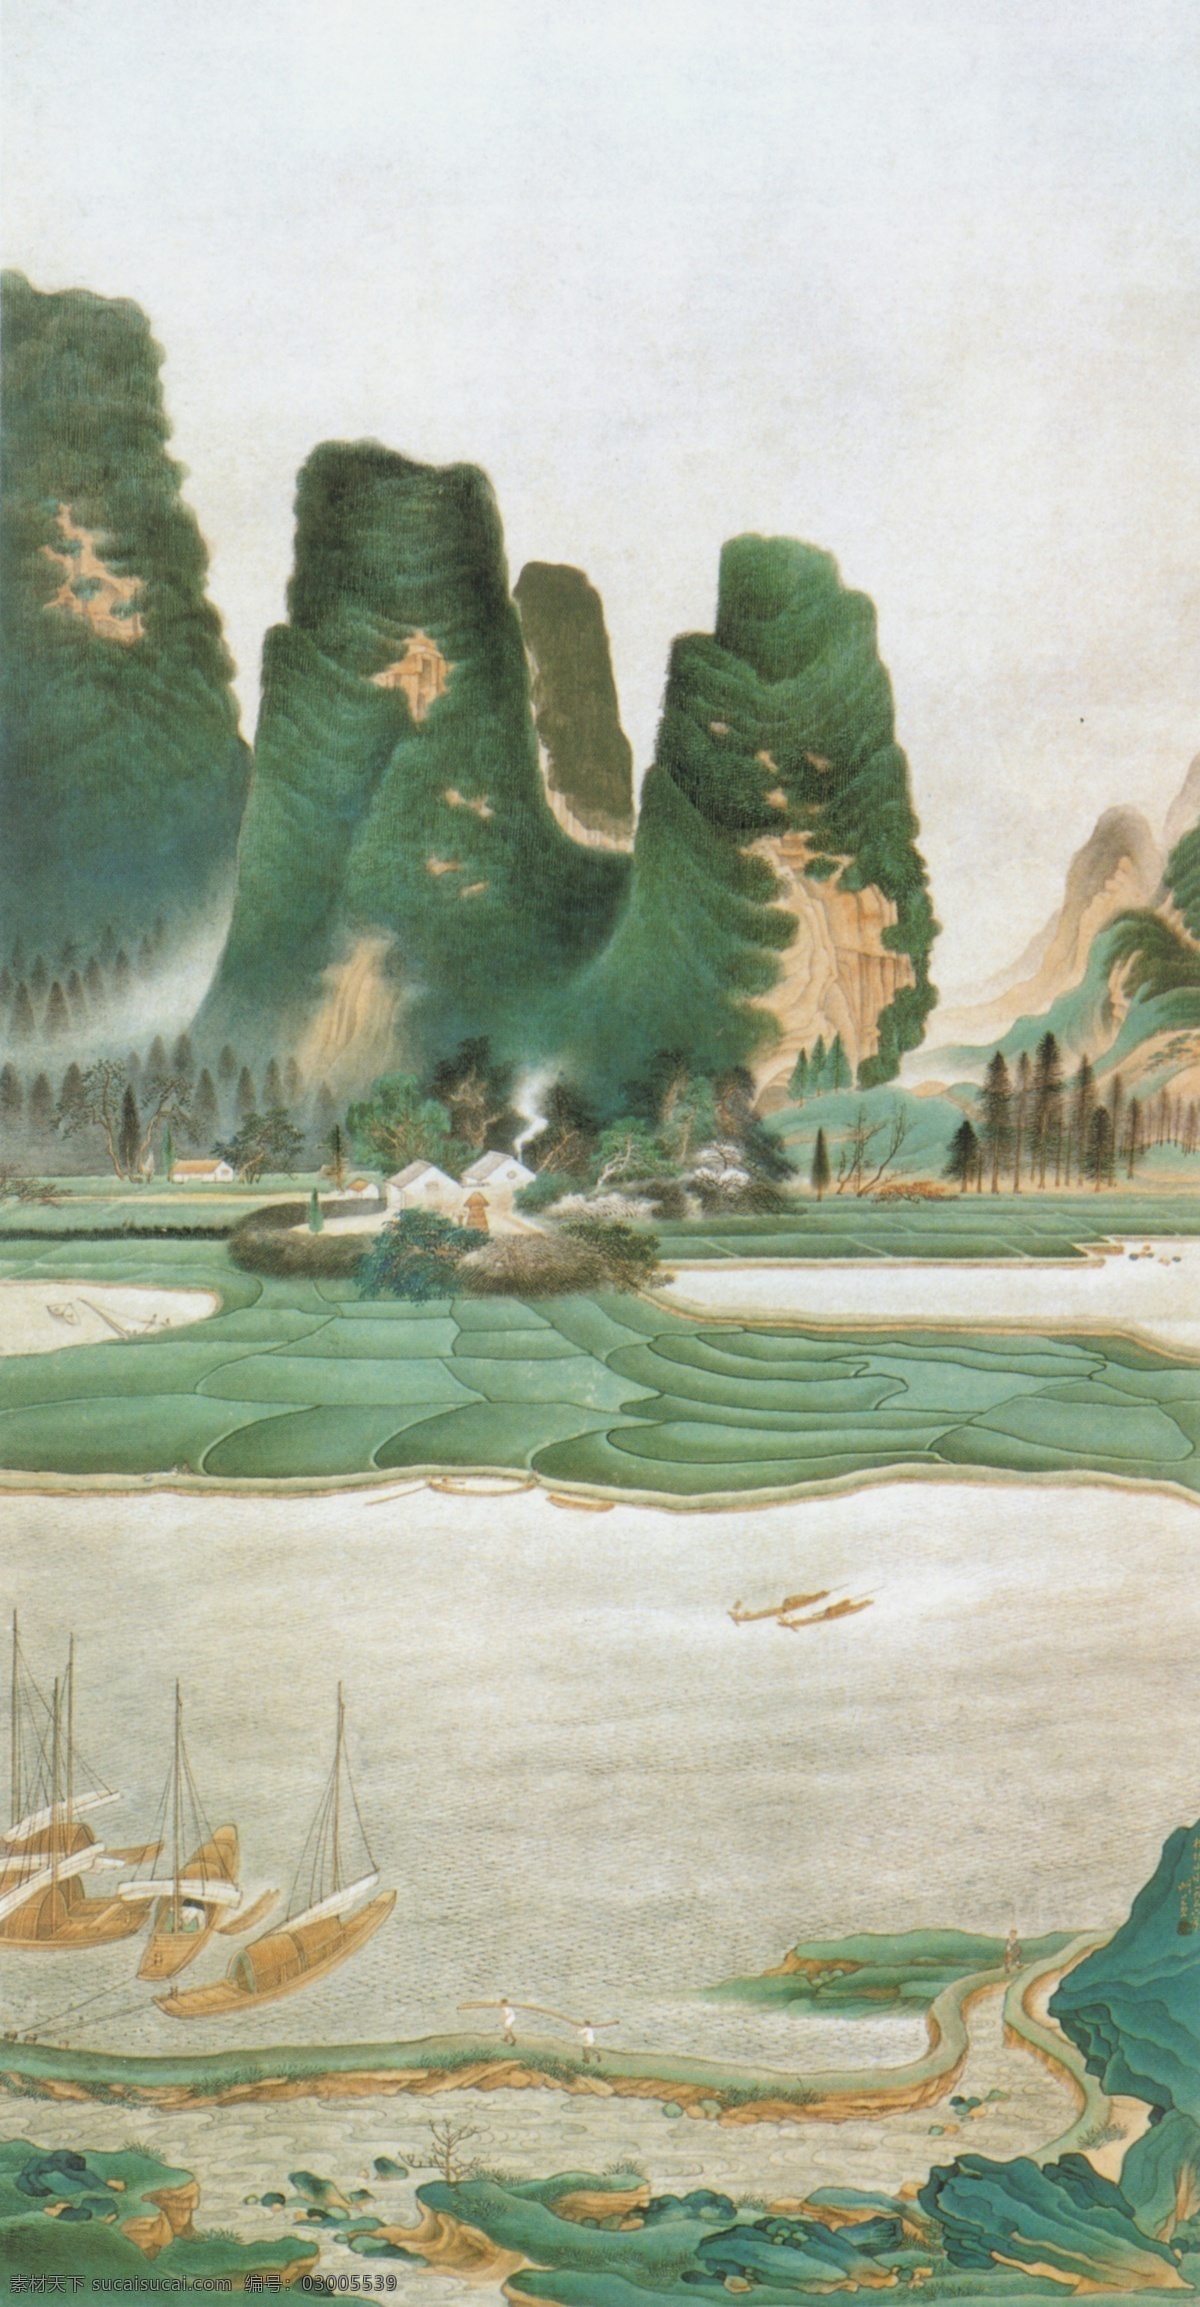 桂林 山水 图 传统 水墨 炊烟 船 房舍 中国 现代 篇 文化艺术 绘画书法